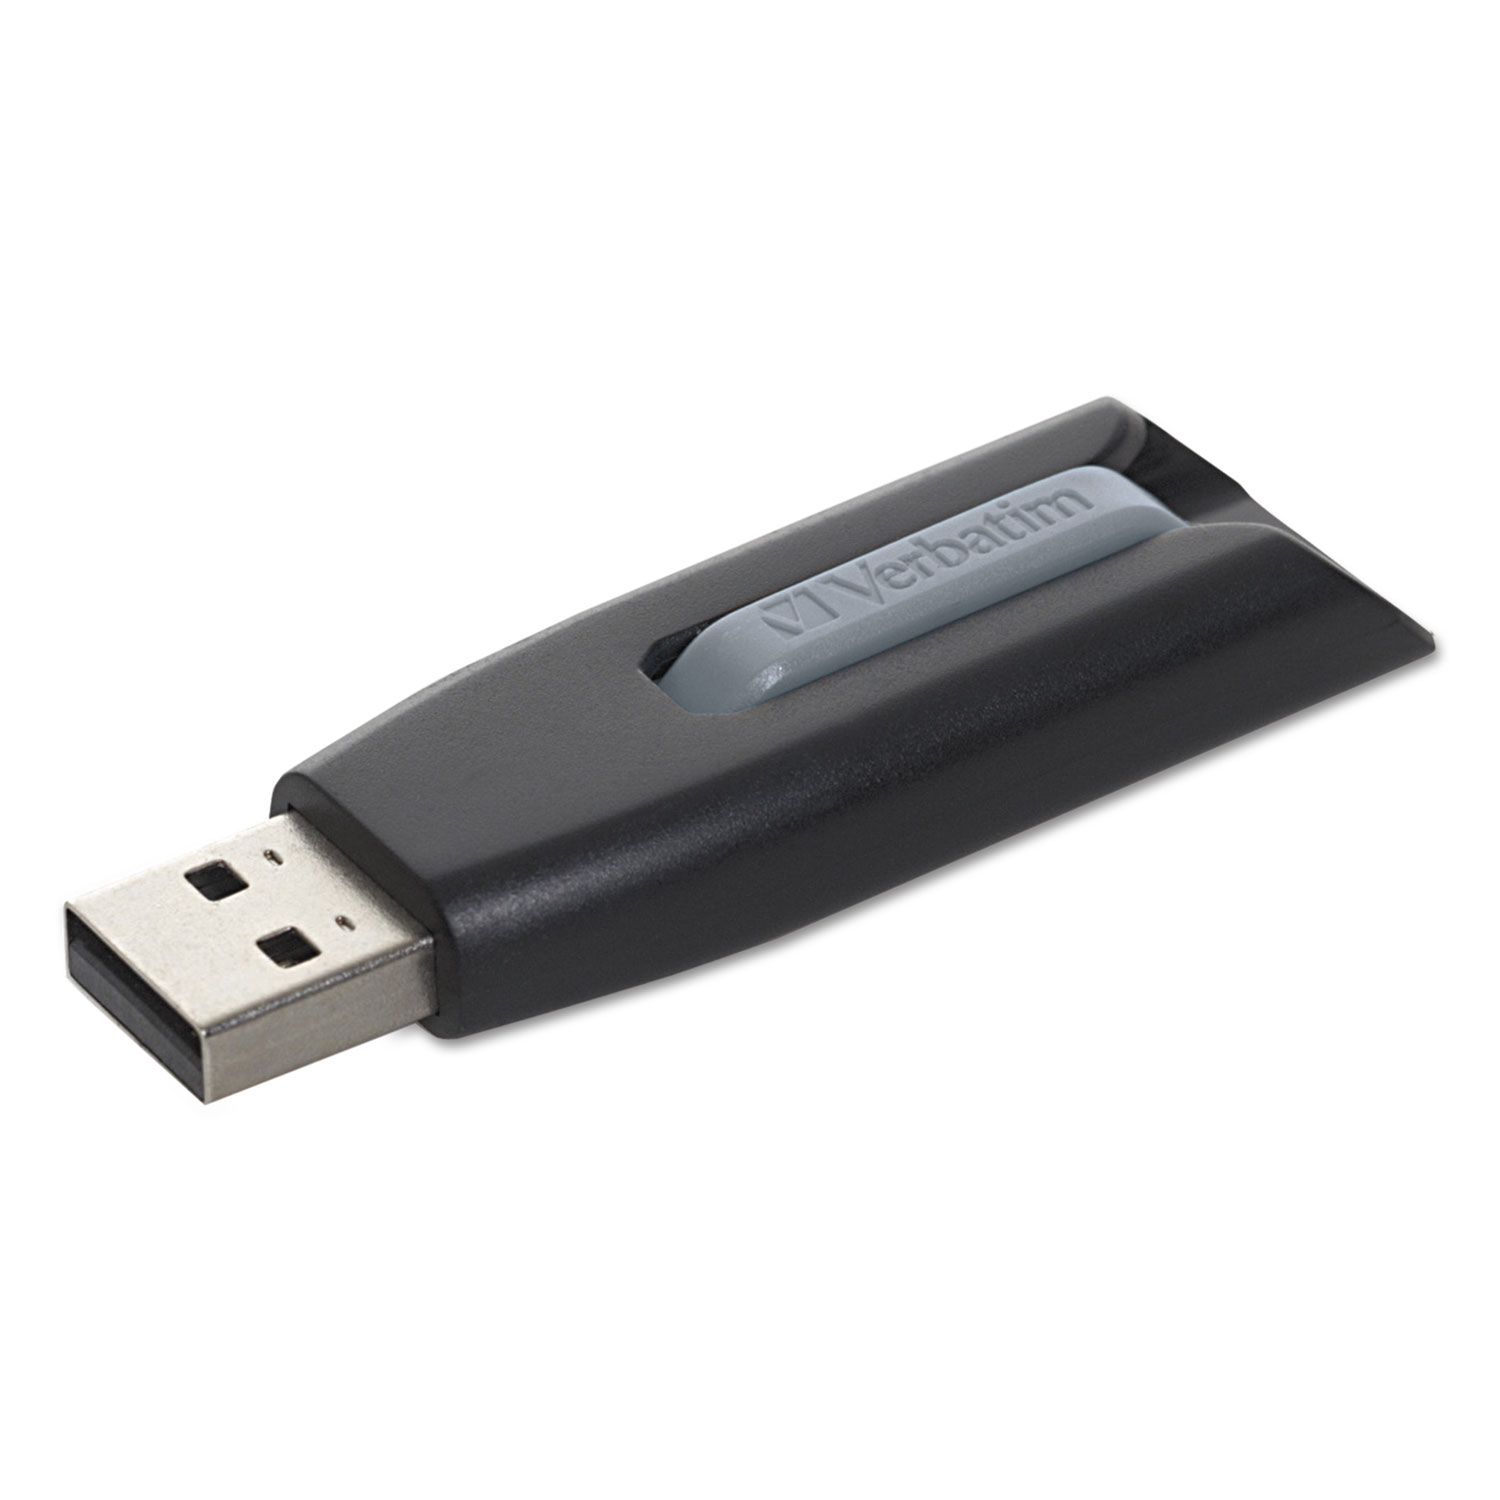  Verbatim 49168 Store 'n' Go V3 USB 3.0 Drive, 256 GB, Black/Gray (VER49168) 